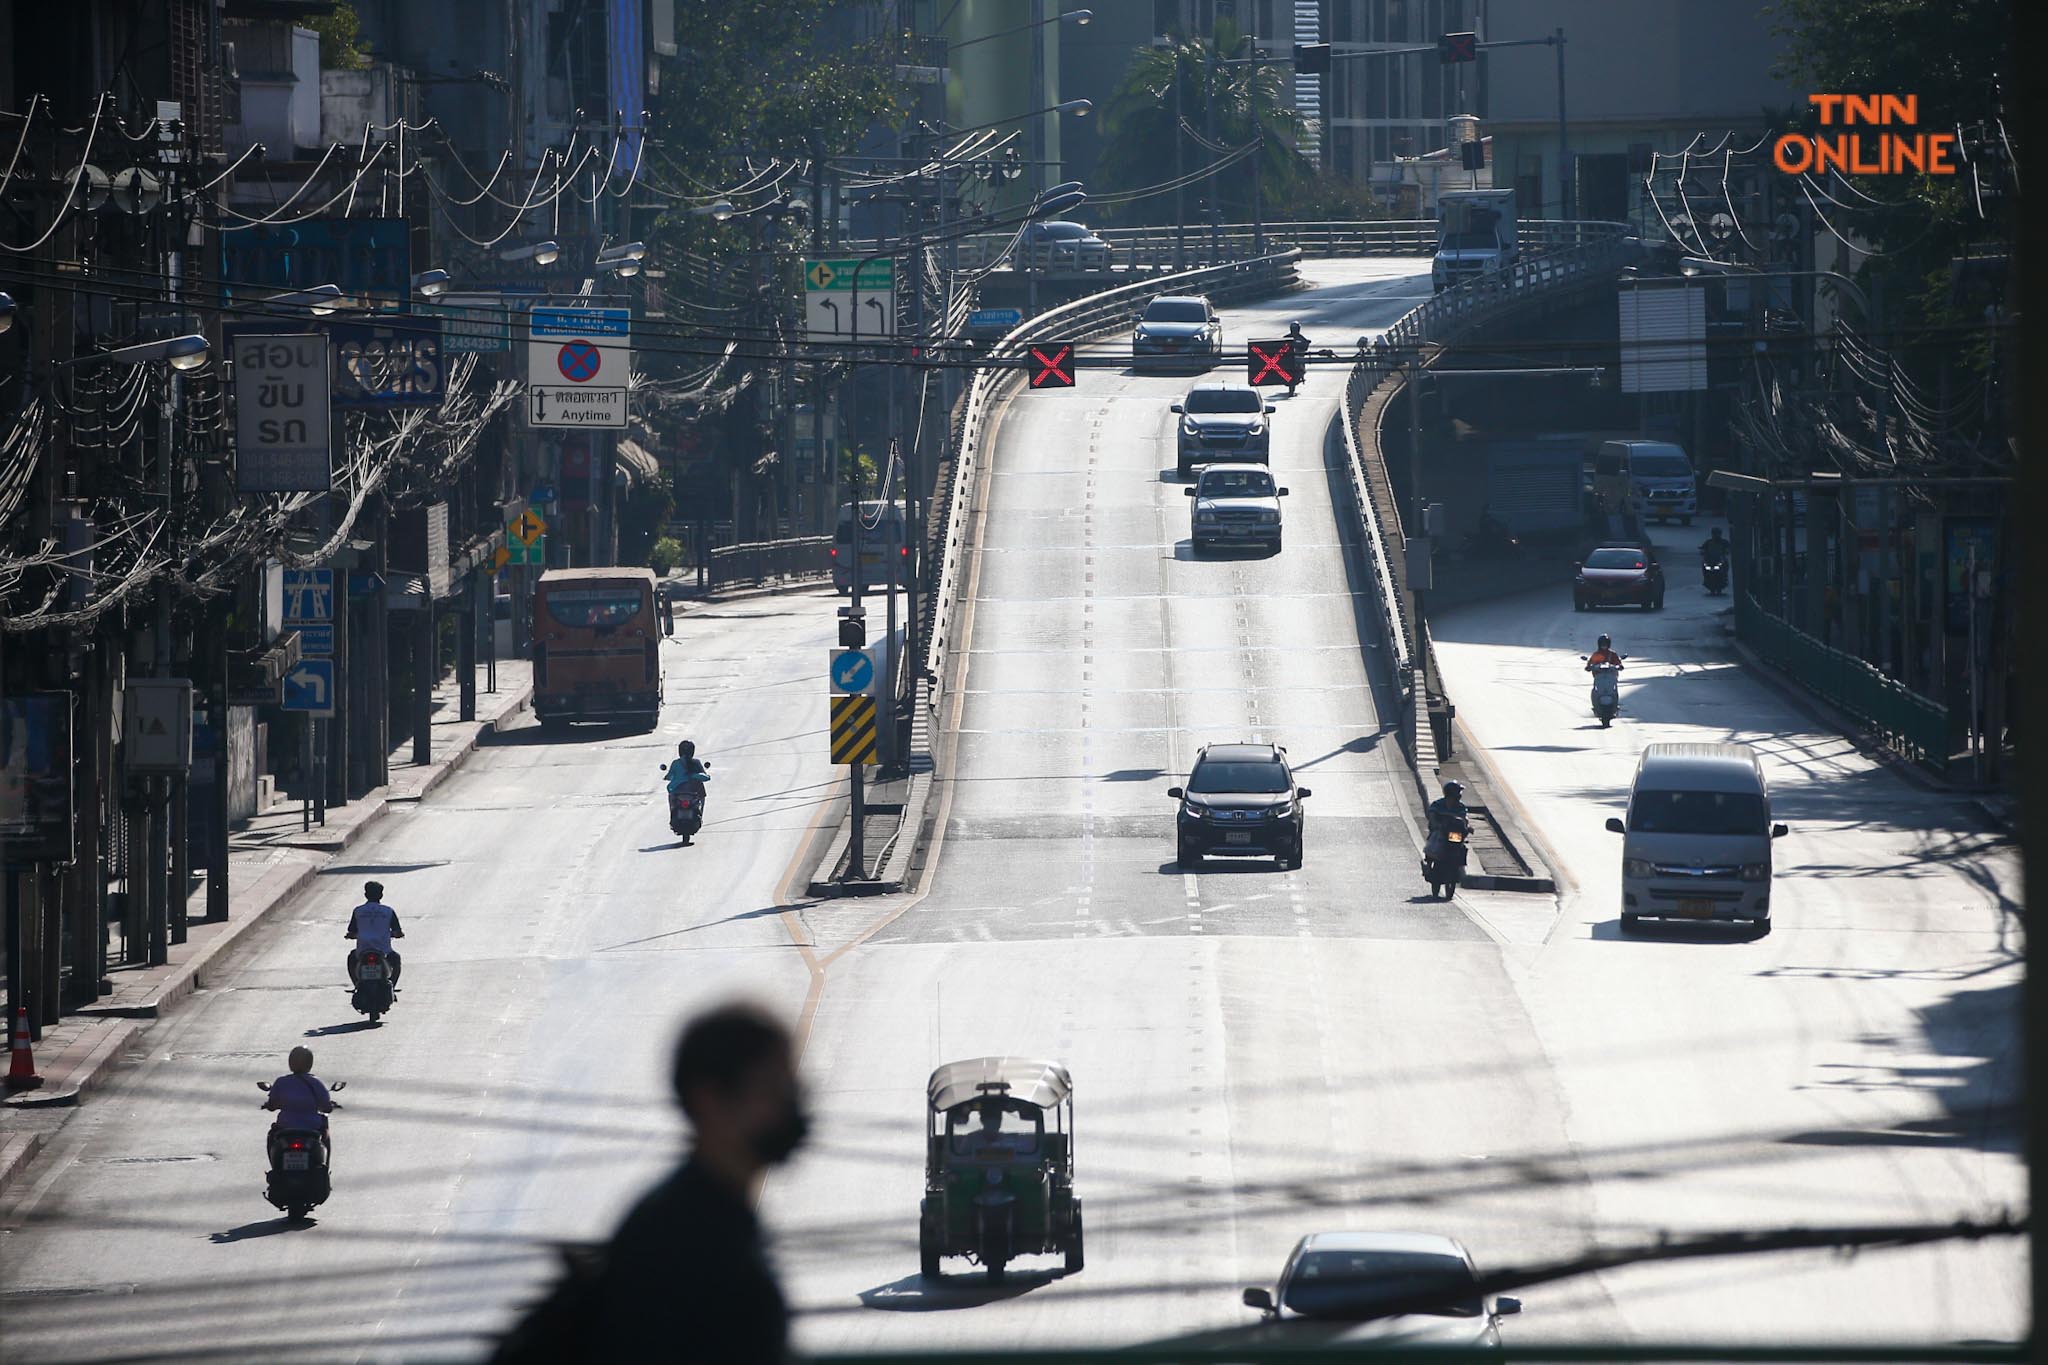 ประมวลภาพ กทม. ถนนโล่งในวันศุกร์สุดท้ายของปี 